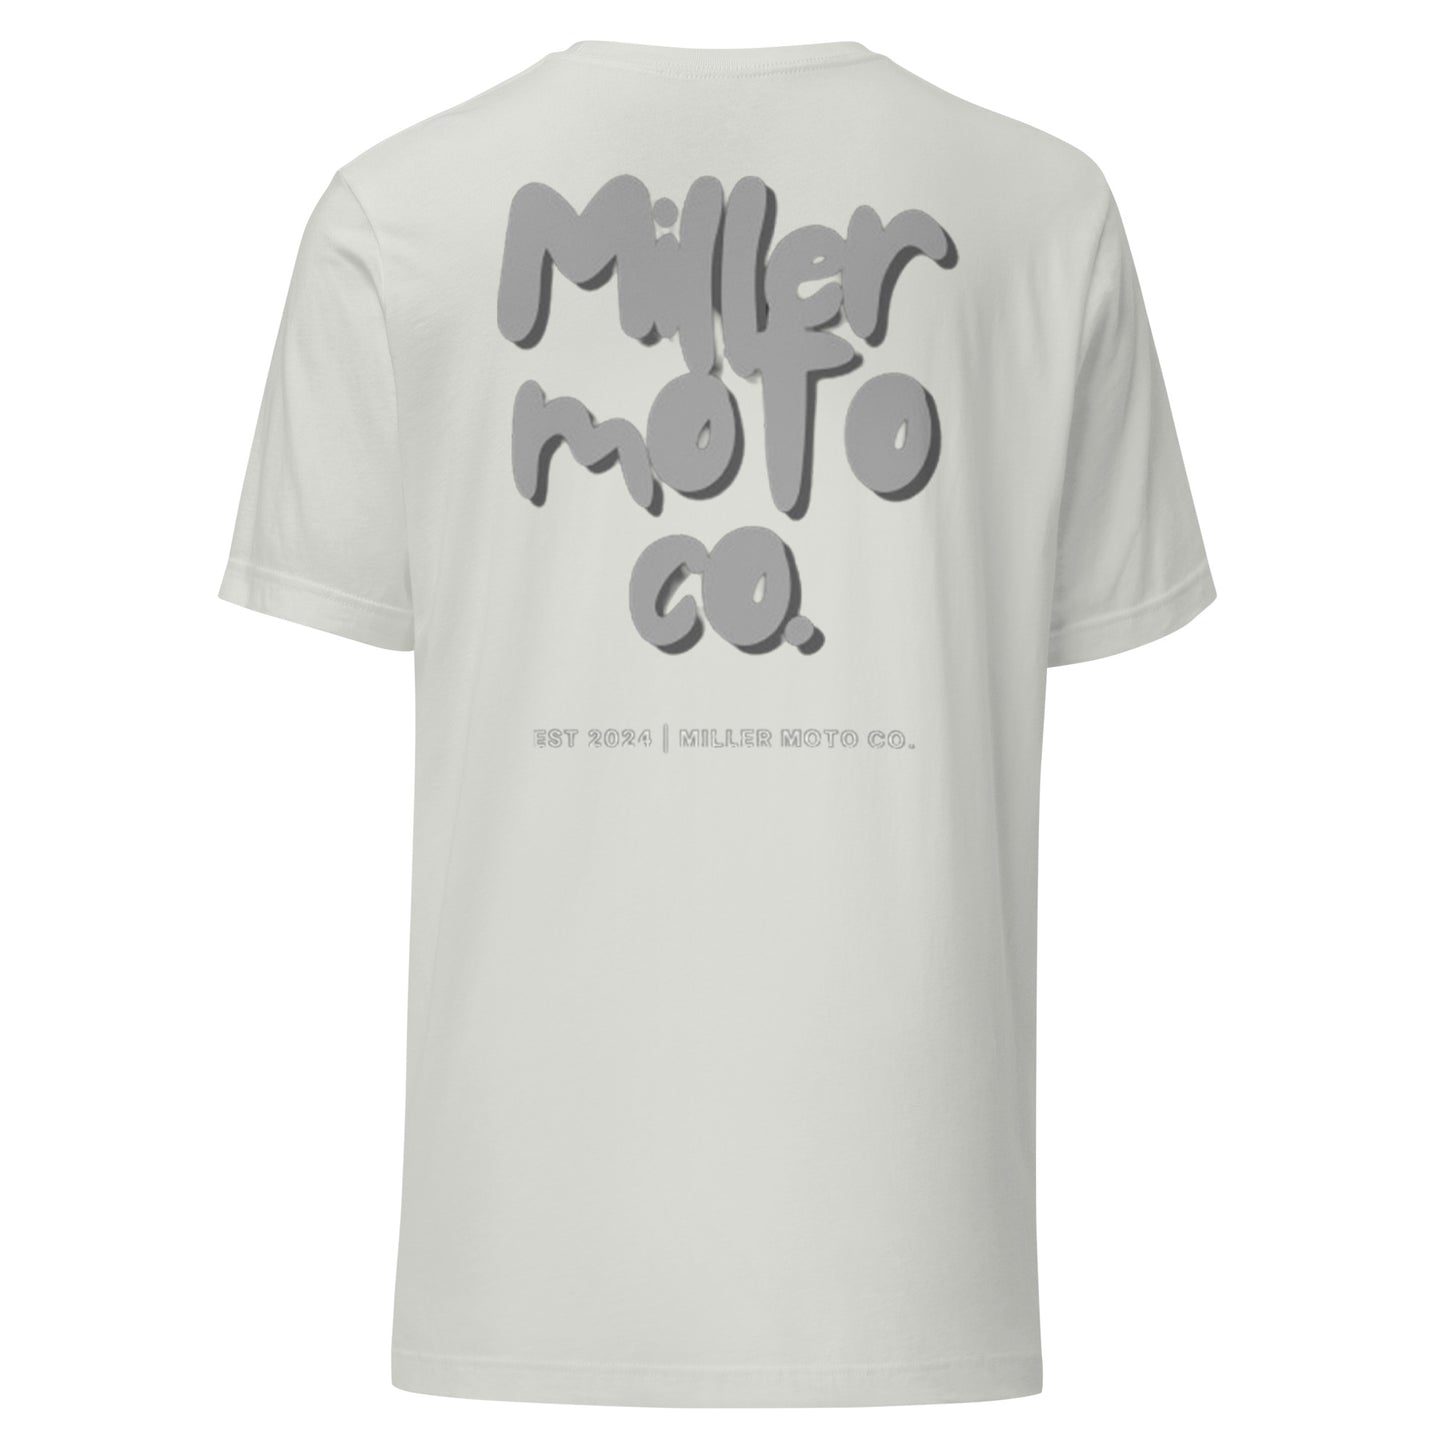 Miller Moto Co. T-Shirt